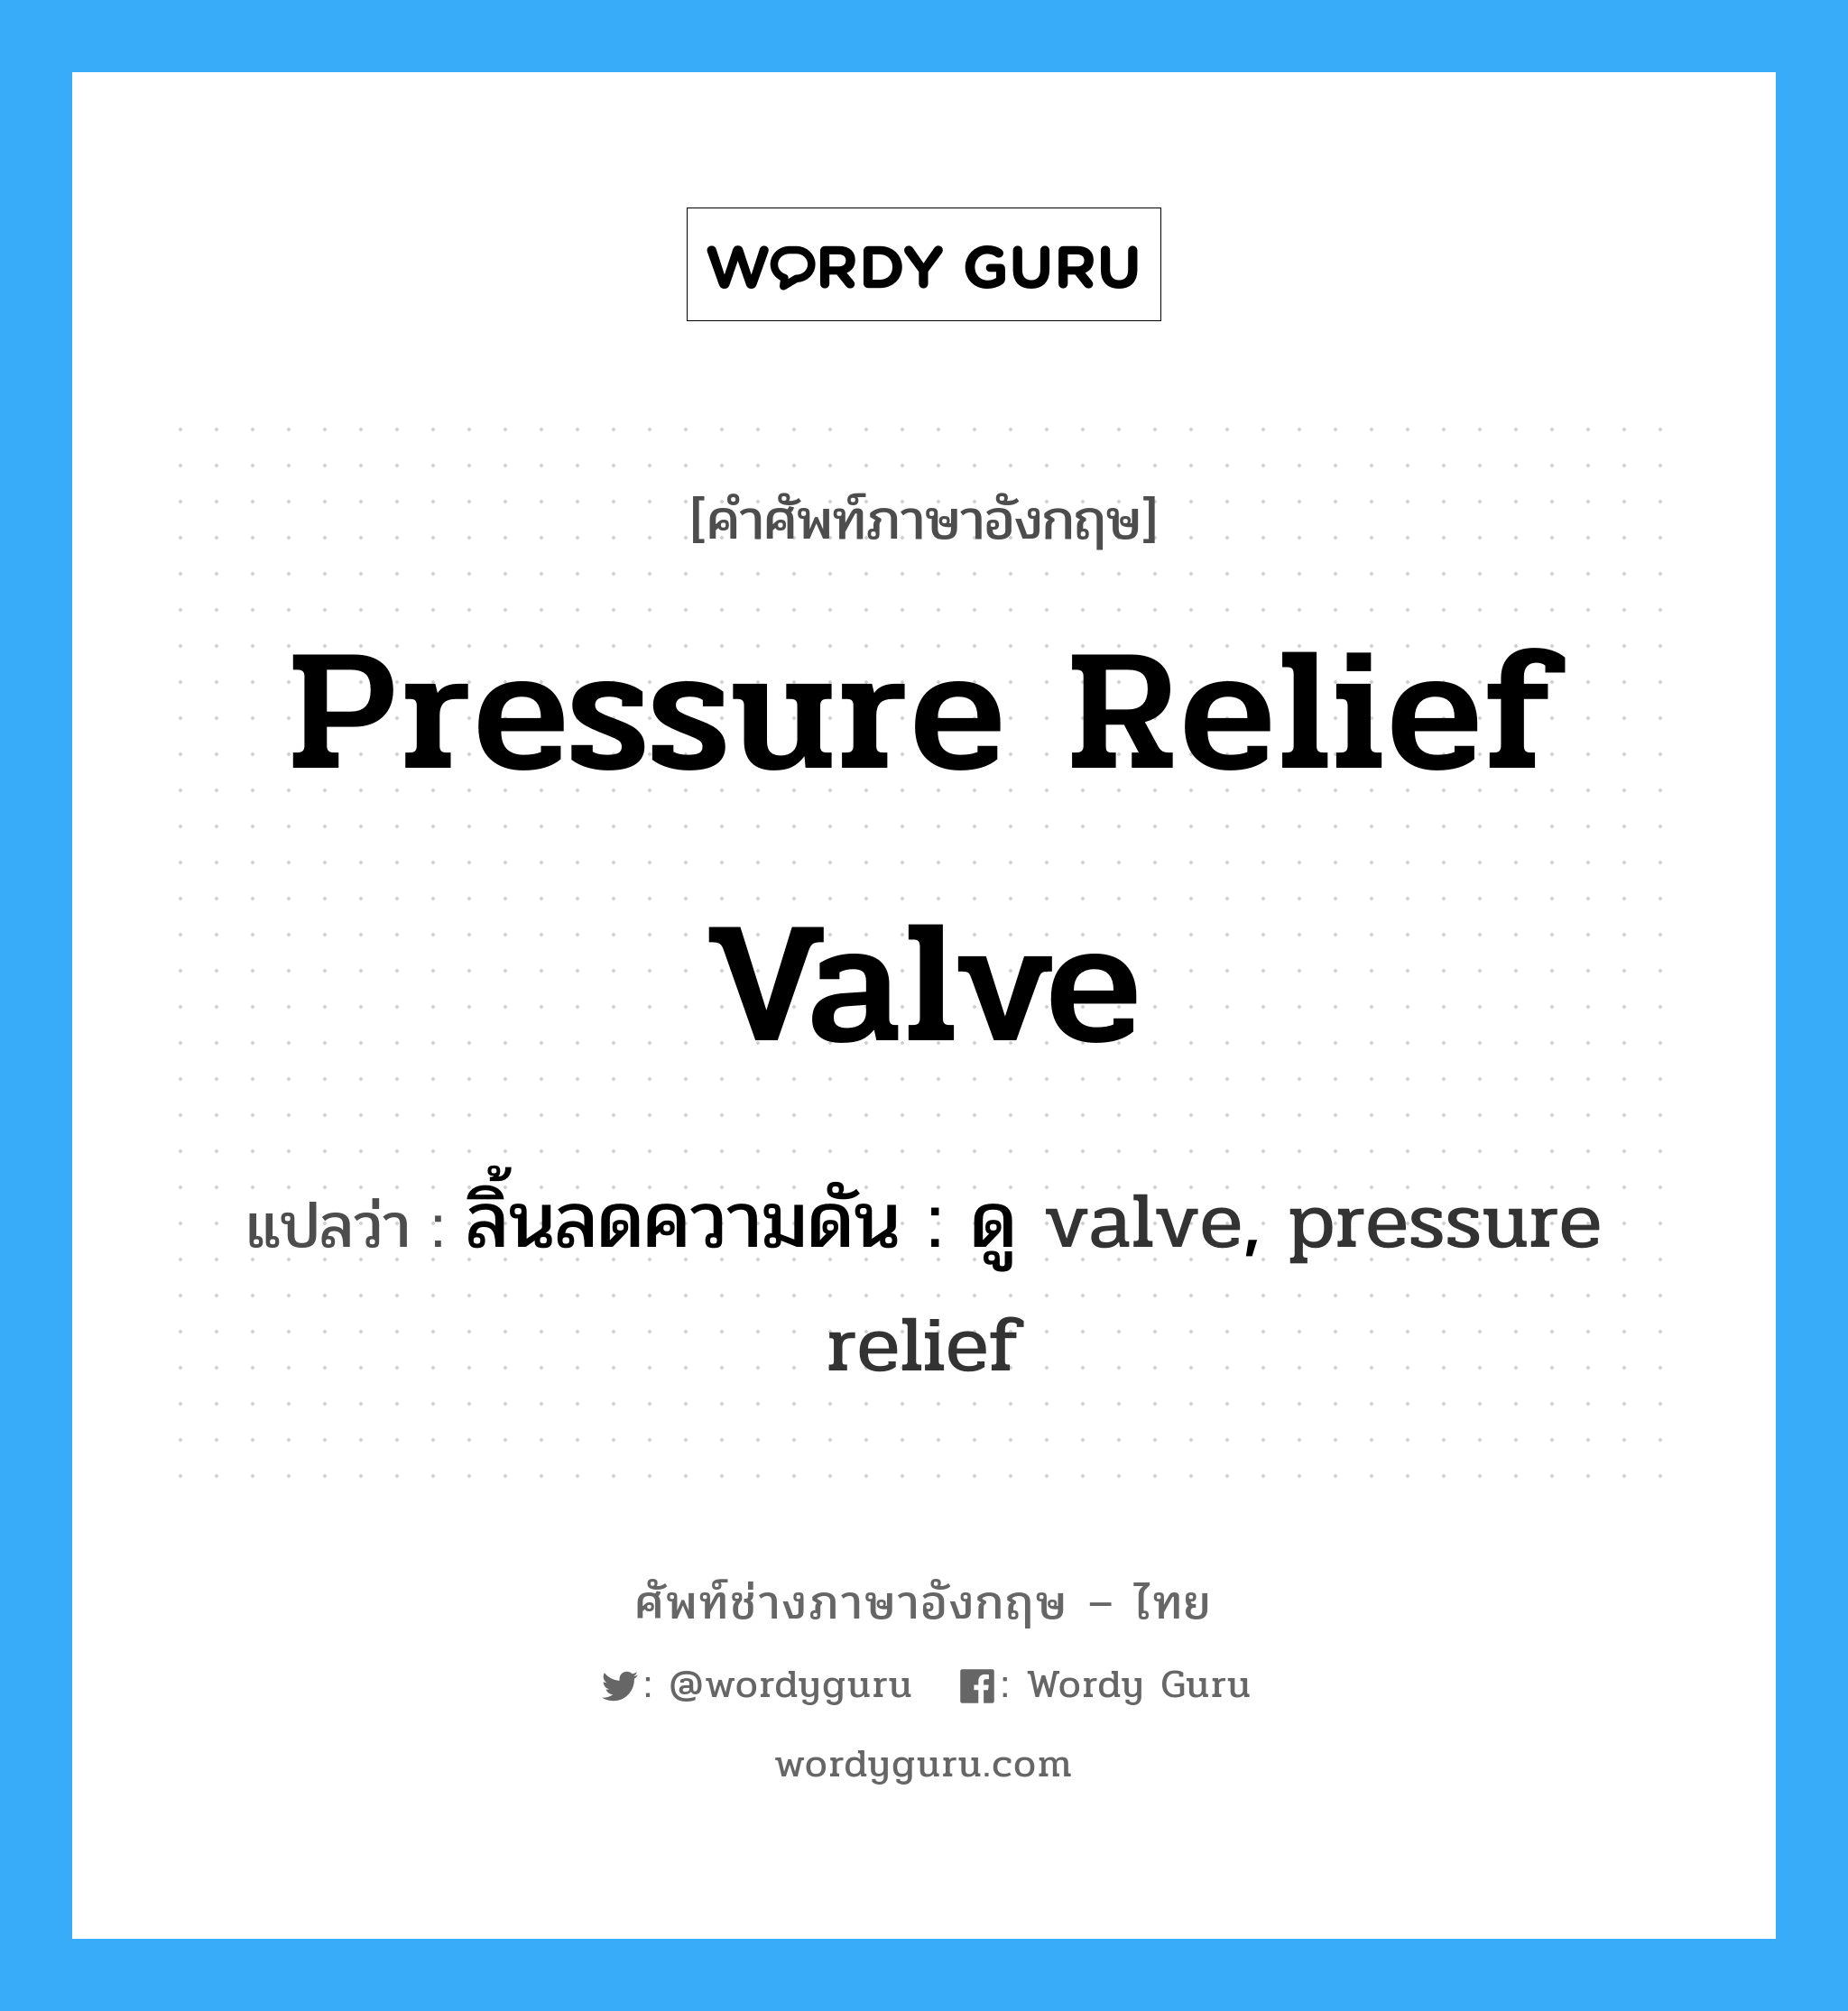 ลิ้นลดความดัน : ดู valve, pressure relief ภาษาอังกฤษ?, คำศัพท์ช่างภาษาอังกฤษ - ไทย ลิ้นลดความดัน : ดู valve, pressure relief คำศัพท์ภาษาอังกฤษ ลิ้นลดความดัน : ดู valve, pressure relief แปลว่า pressure relief valve